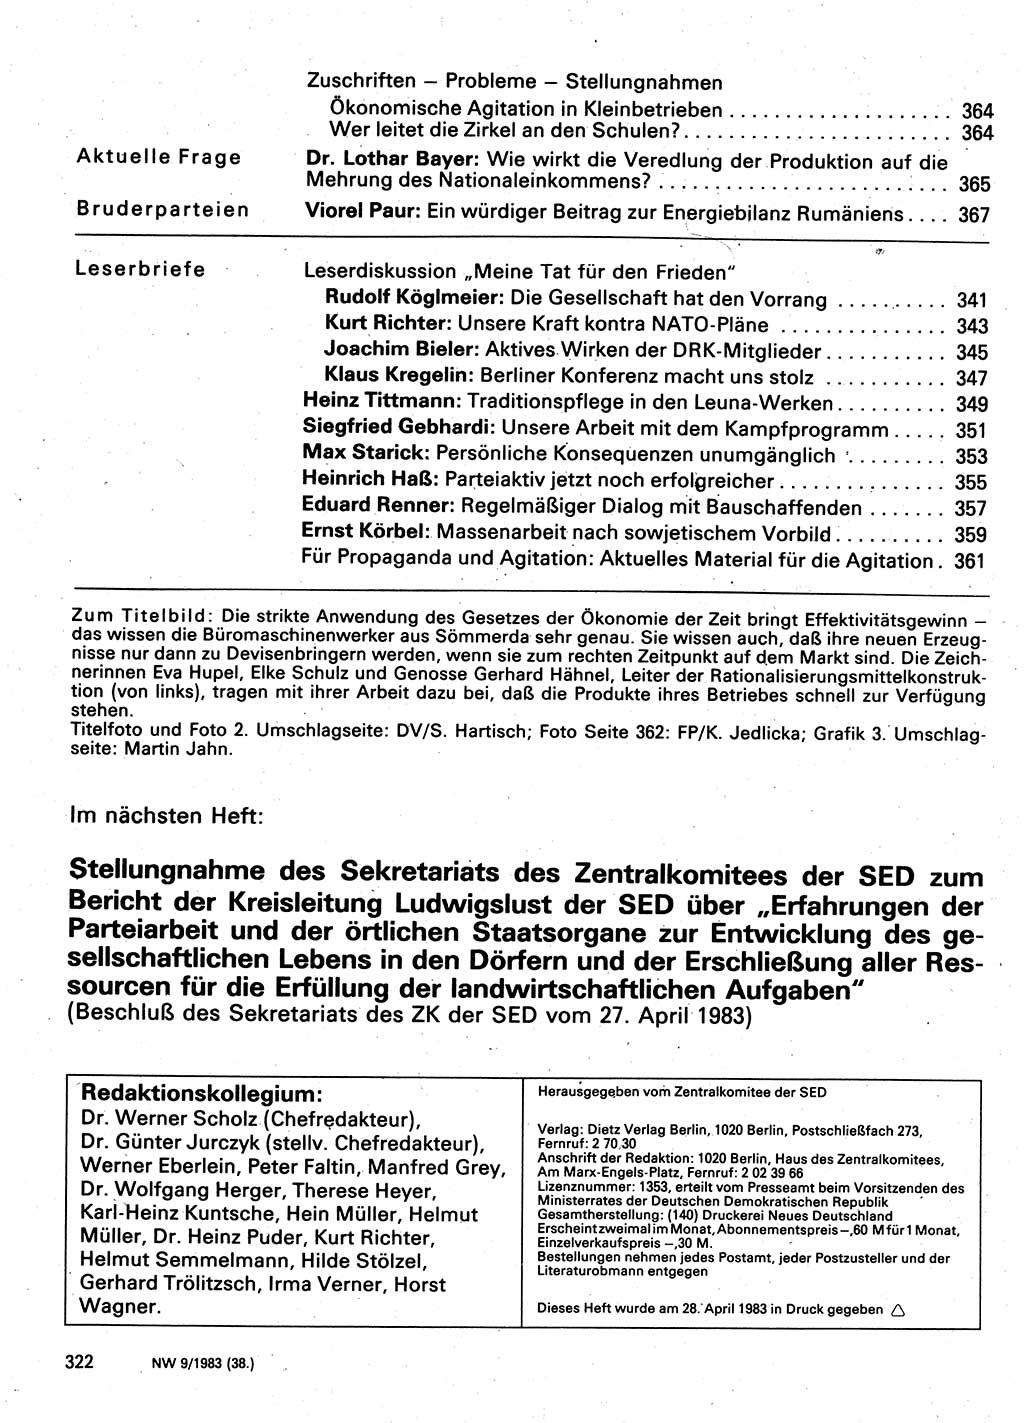 Neuer Weg (NW), Organ des Zentralkomitees (ZK) der SED (Sozialistische Einheitspartei Deutschlands) für Fragen des Parteilebens, 38. Jahrgang [Deutsche Demokratische Republik (DDR)] 1983, Seite 322 (NW ZK SED DDR 1983, S. 322)